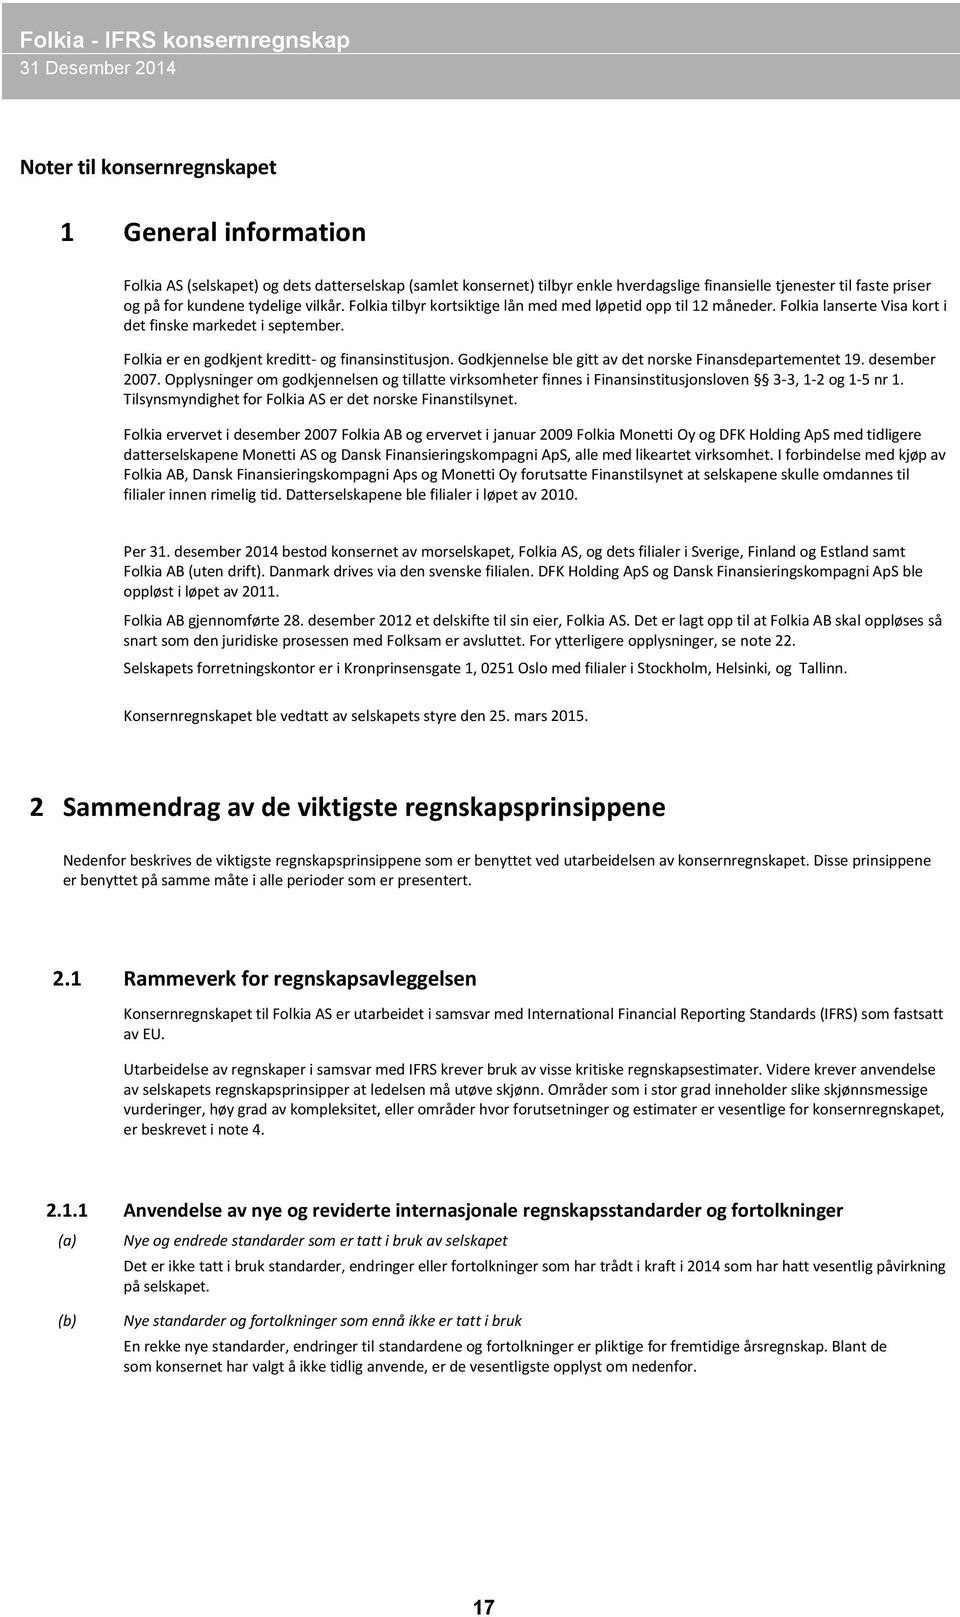 Godkjennelse ble gitt av det norske Finansdepartementet 19. desember 2007. Opplysninger om godkjennelsen og tillatte virksomheter finnes i Finansinstitusjonsloven 3-3, 1-2 og 1-5 nr 1.